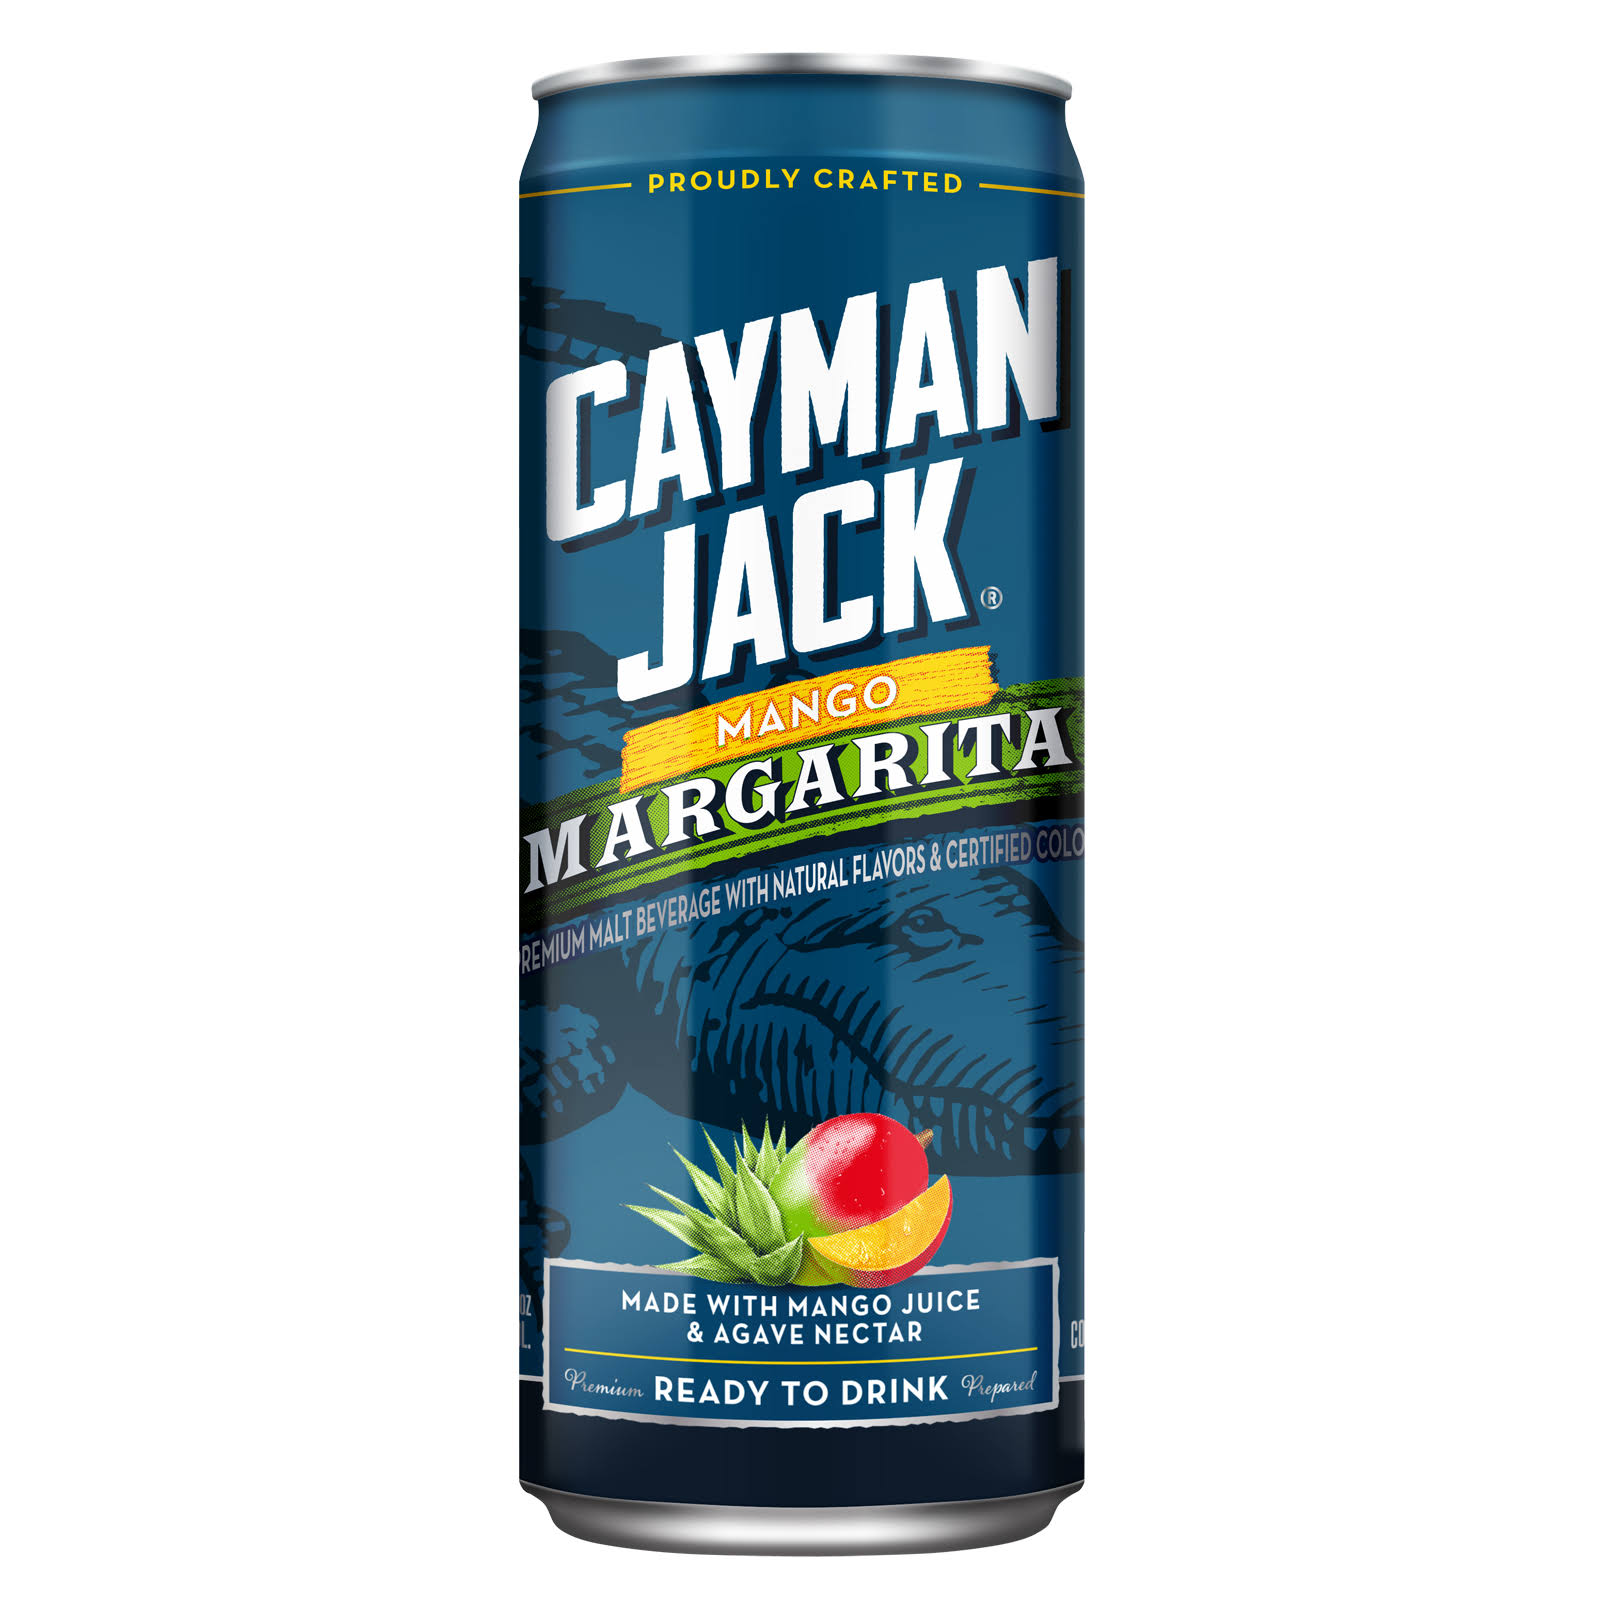 Cayman Jack Mango Margarita Single 12oz Can 5.8% ABV